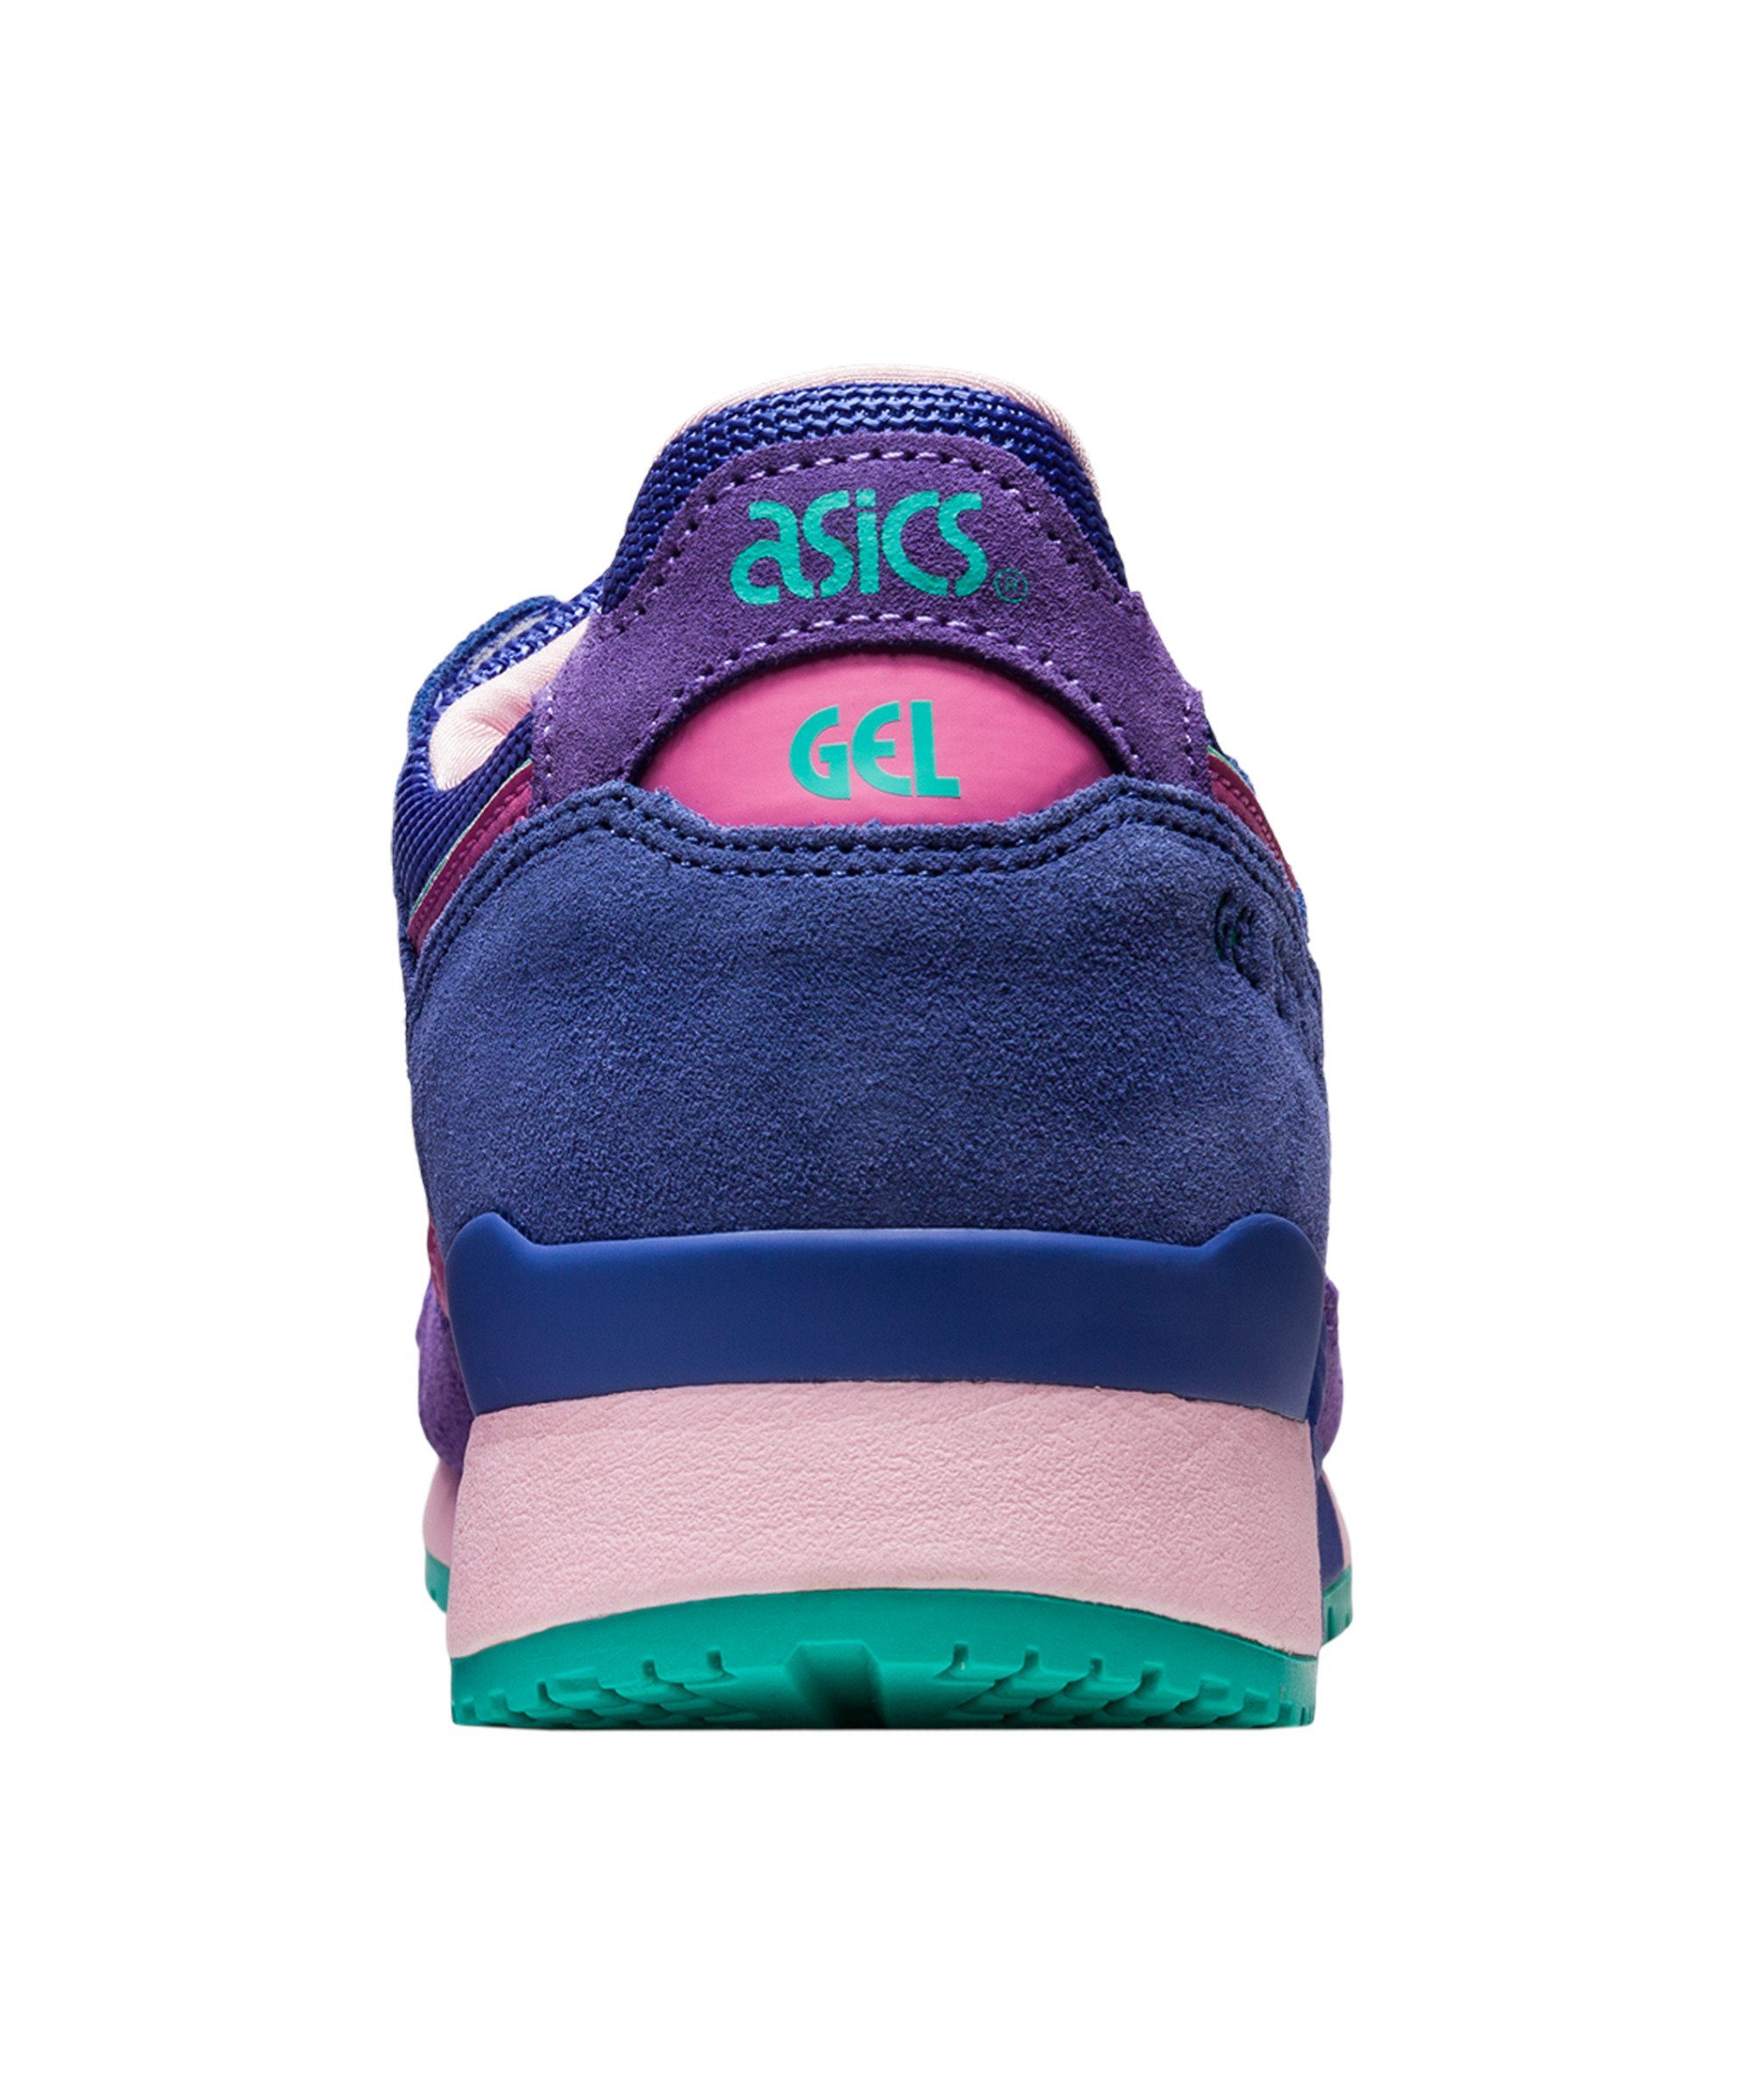 Asics Gel-Lyte III OG blaulilarosa Sneaker